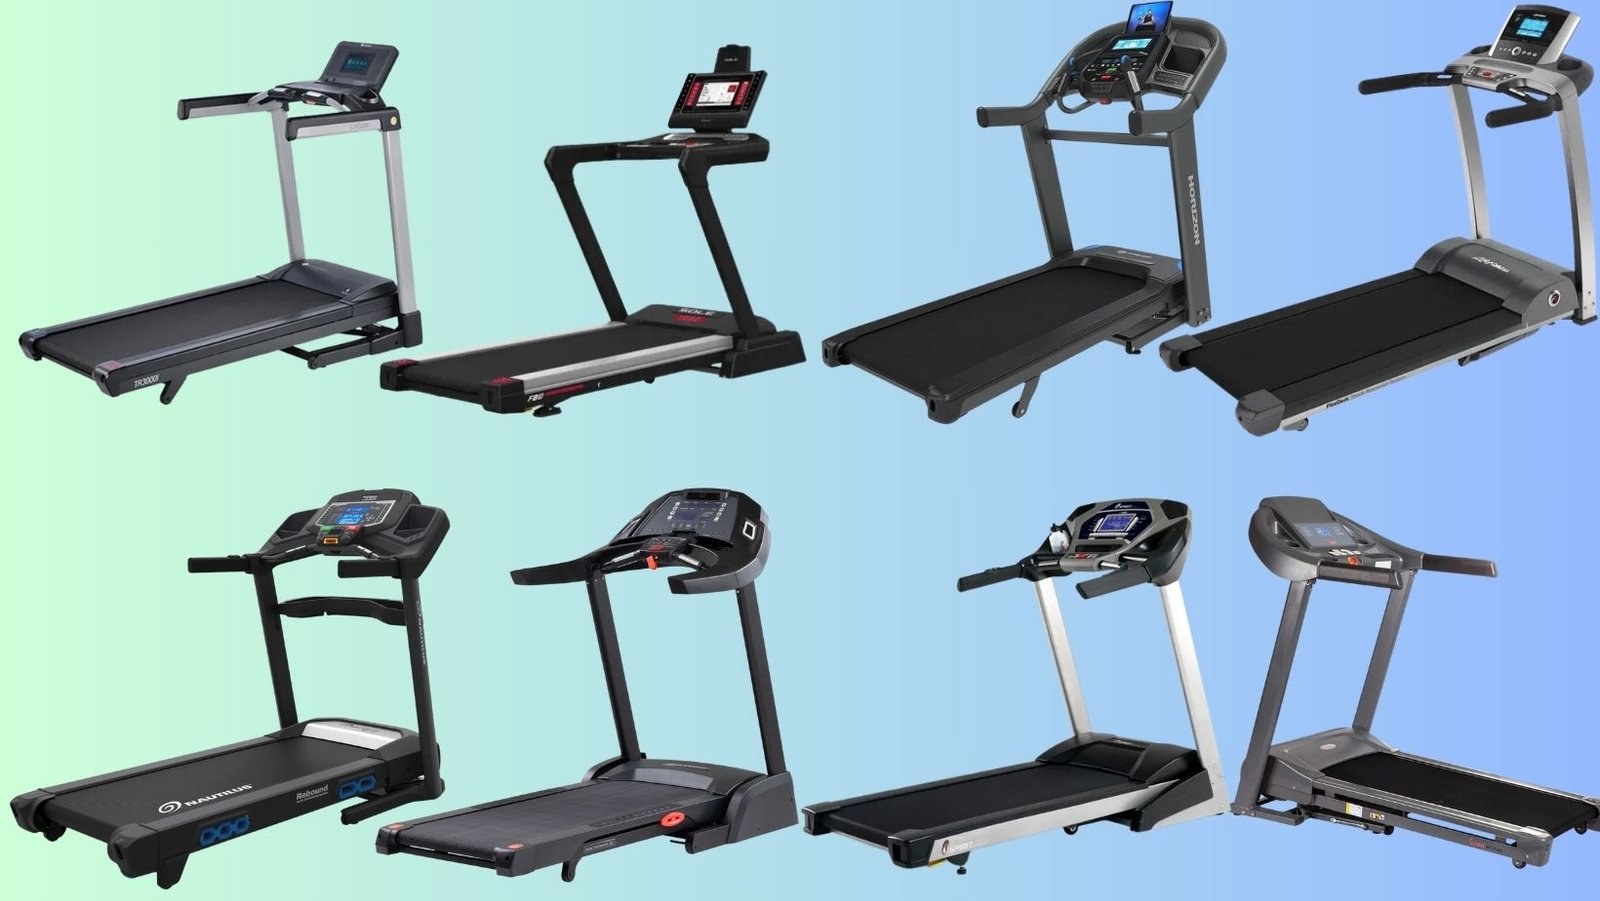 Treadmill with 350 lb Capacity